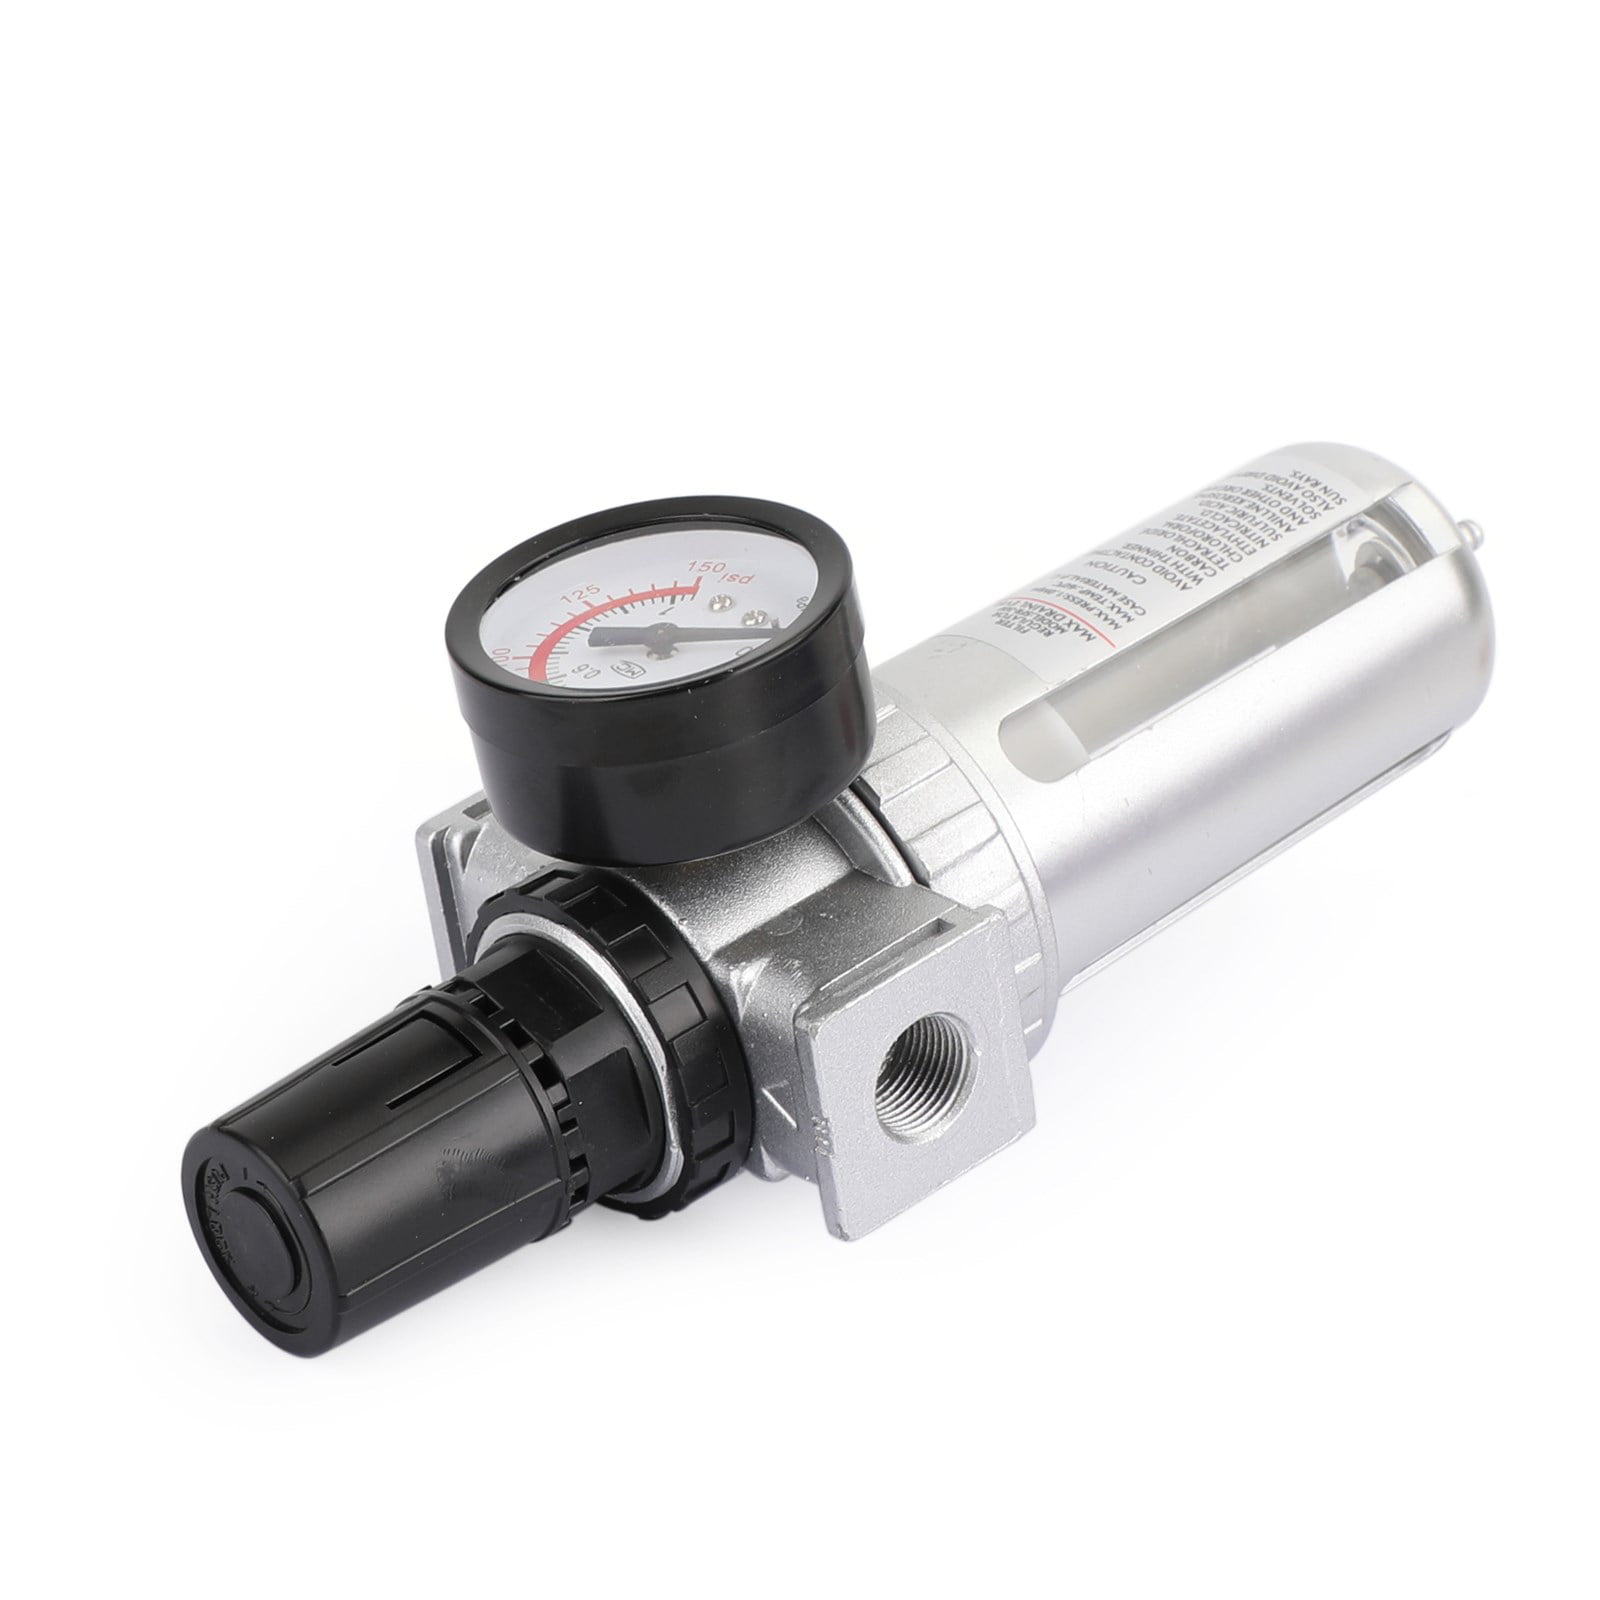 Air Filter Pressure Regulator Compressor Air Tools HVLP Spray Gun Oil Water Trap 